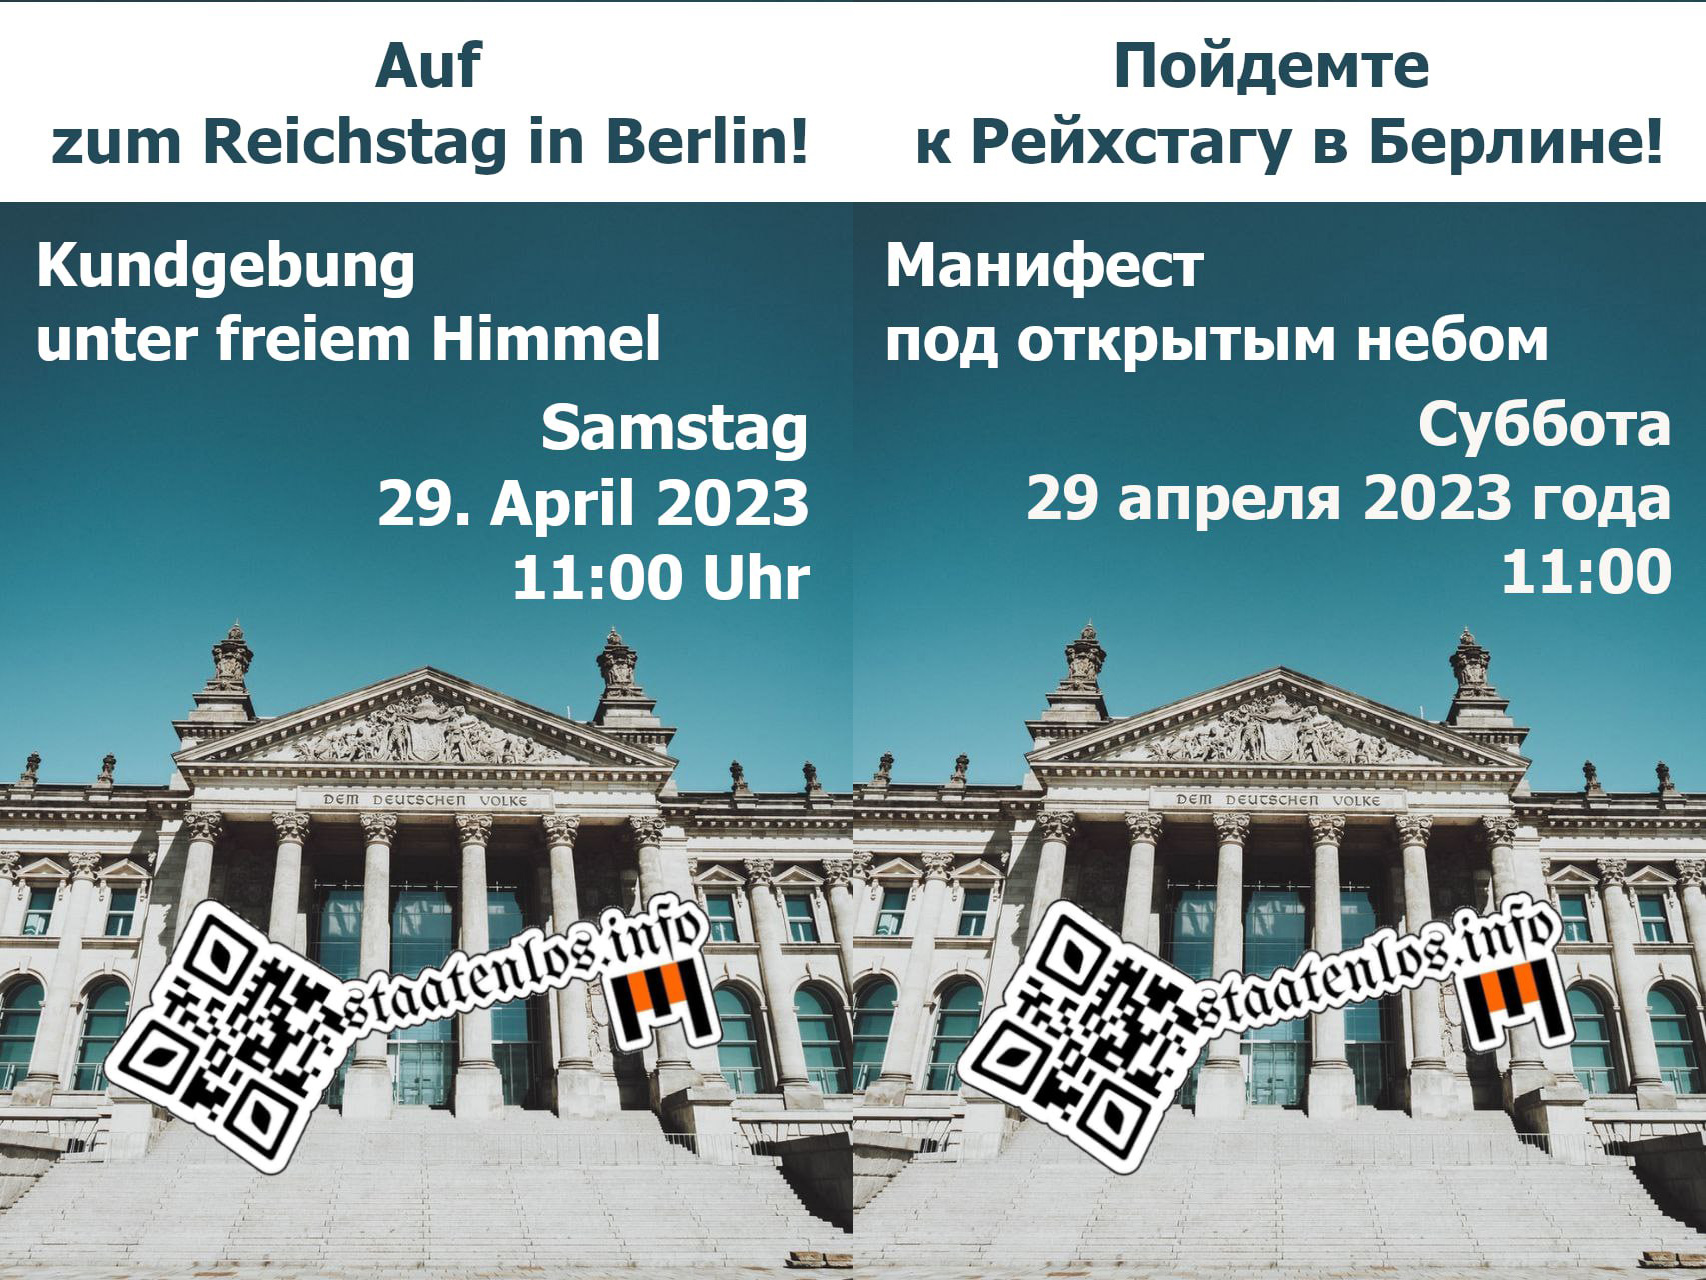 AUF NACH BERLIN am 29.04.2023!